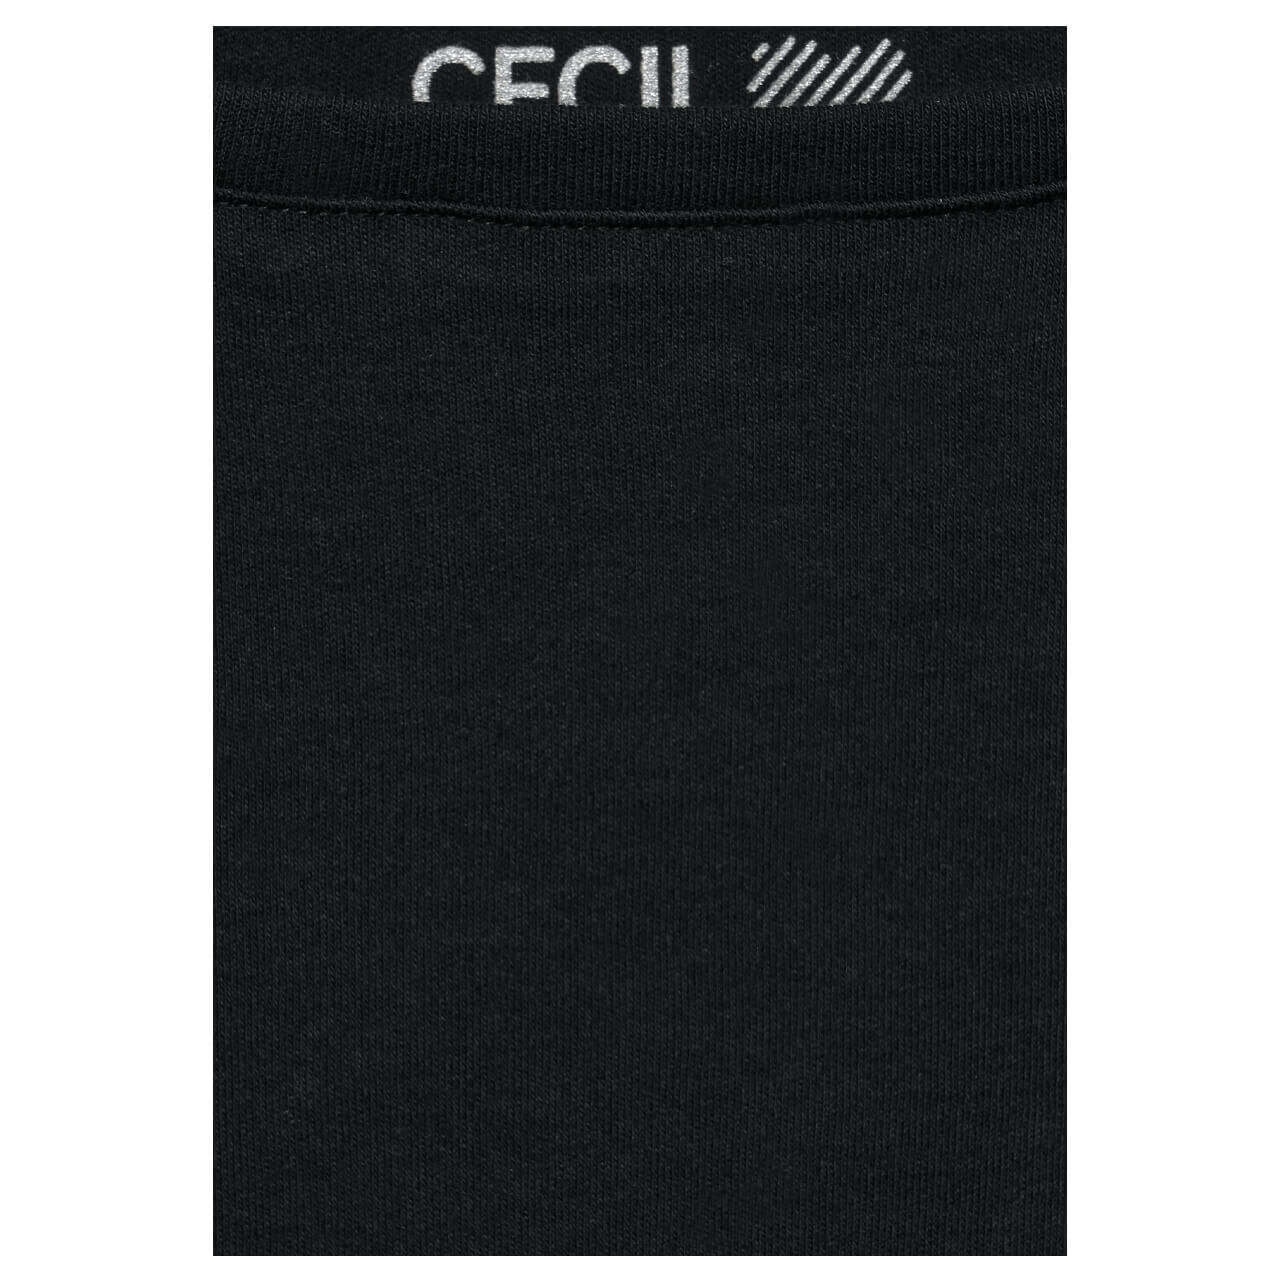 Cecil Basic Boatneck 3/4 Arm Shirt für Damen in Schwarz, FarbNr.: 10001